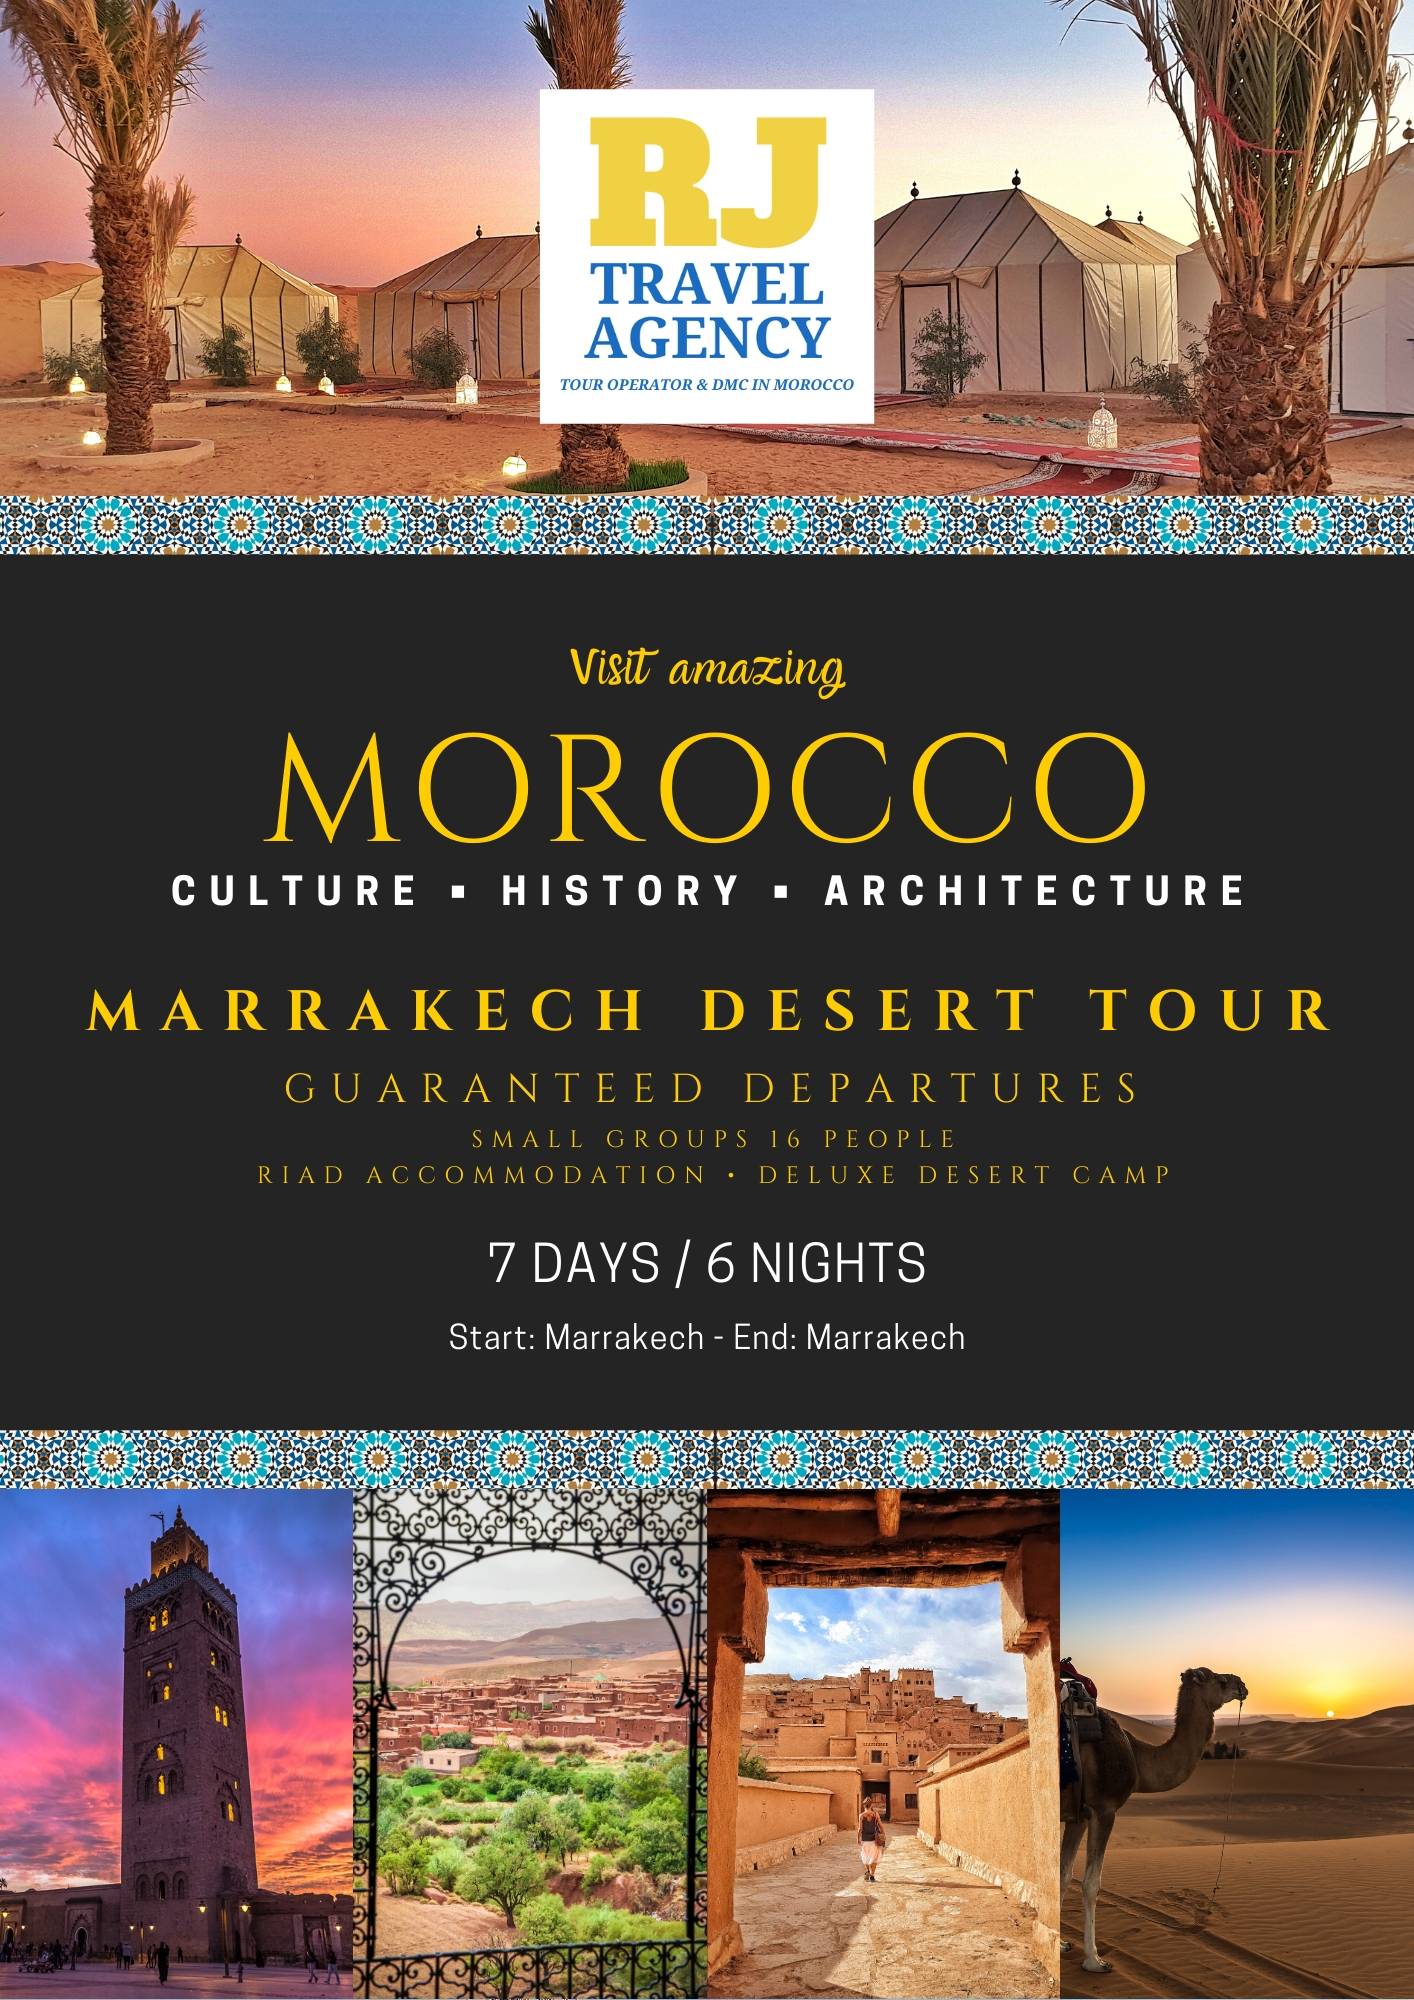 tour operator tour marocco